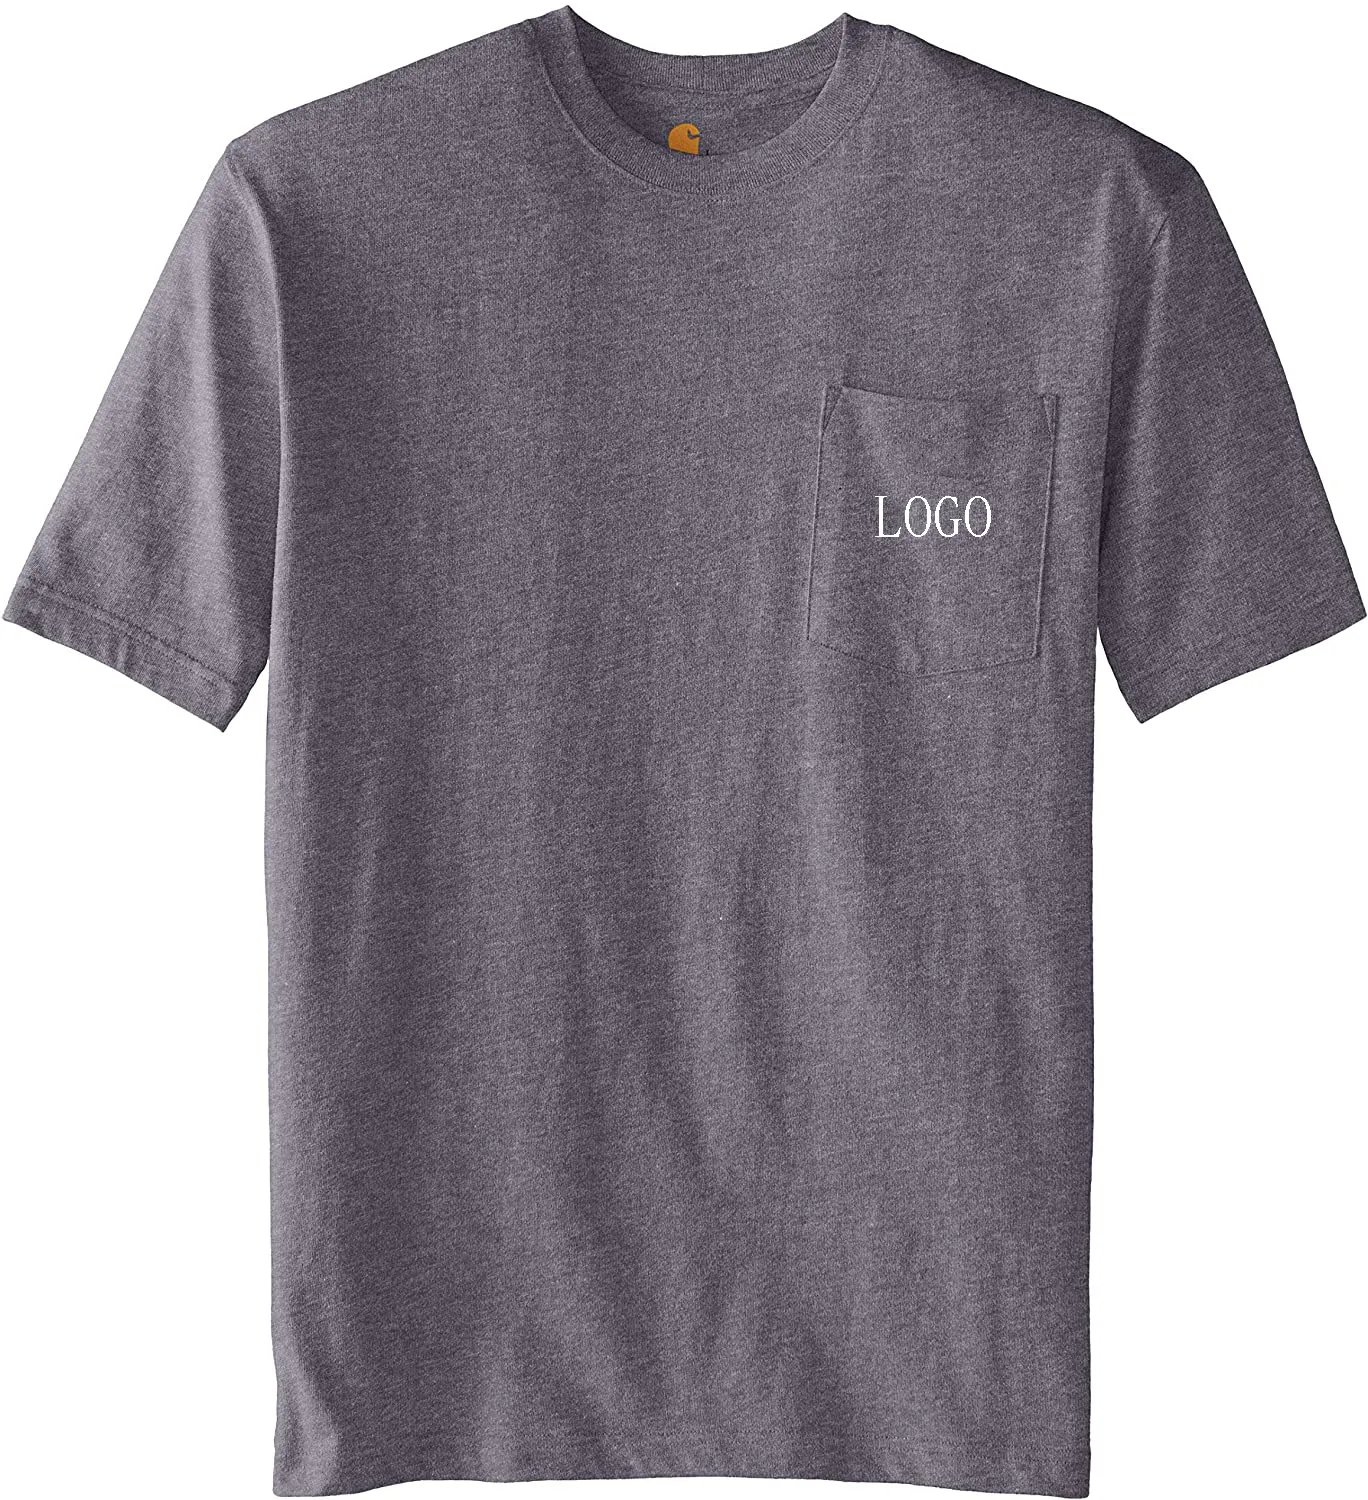 OEM Blank Plain T-Shirts Benutzer definiert Ihr Markenlogo Ropa De Hombre Baumwolle Workout Unisex Plus Size T-Shirt